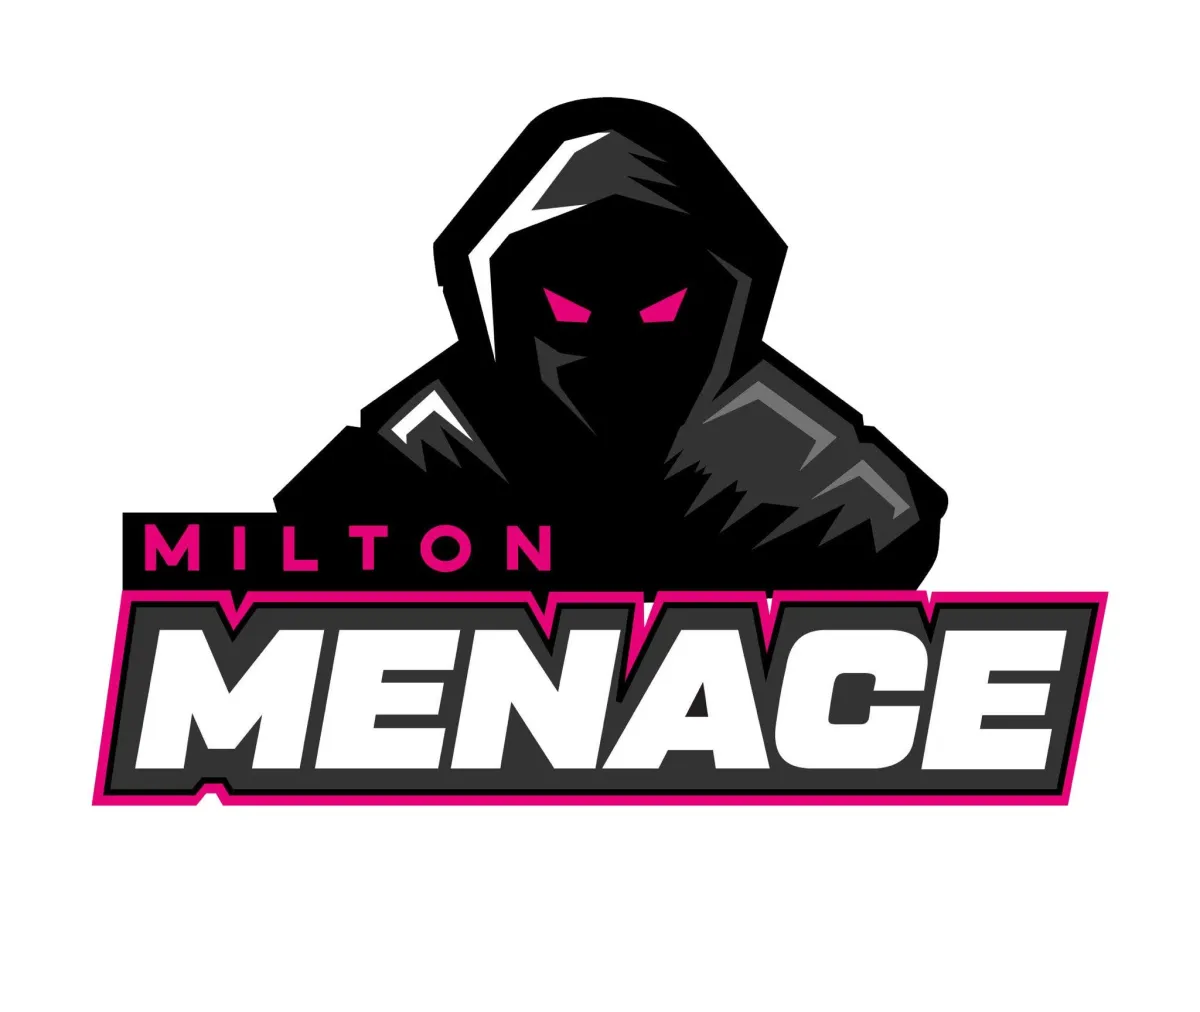 MIlton Menace